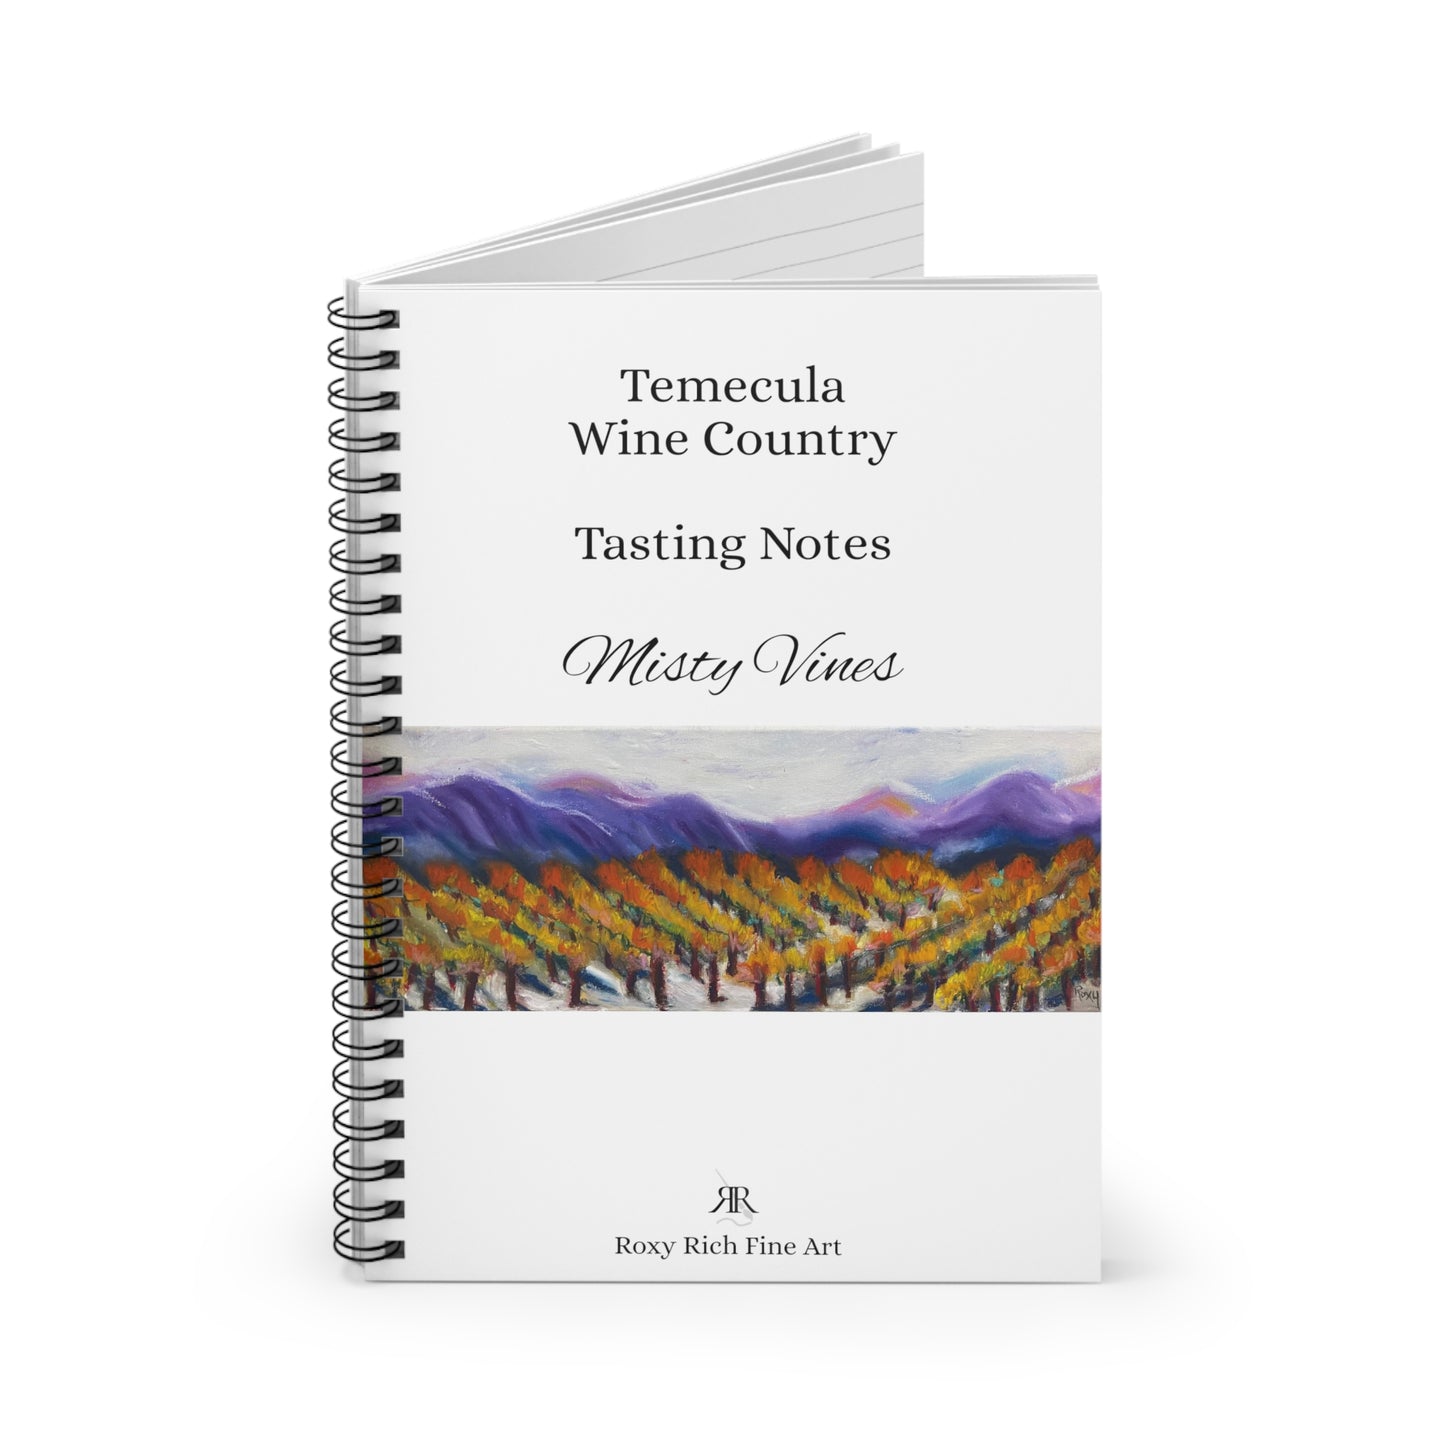 Notes de dégustation de la région viticole de Temecula "Misty Vines" Cahier à spirale